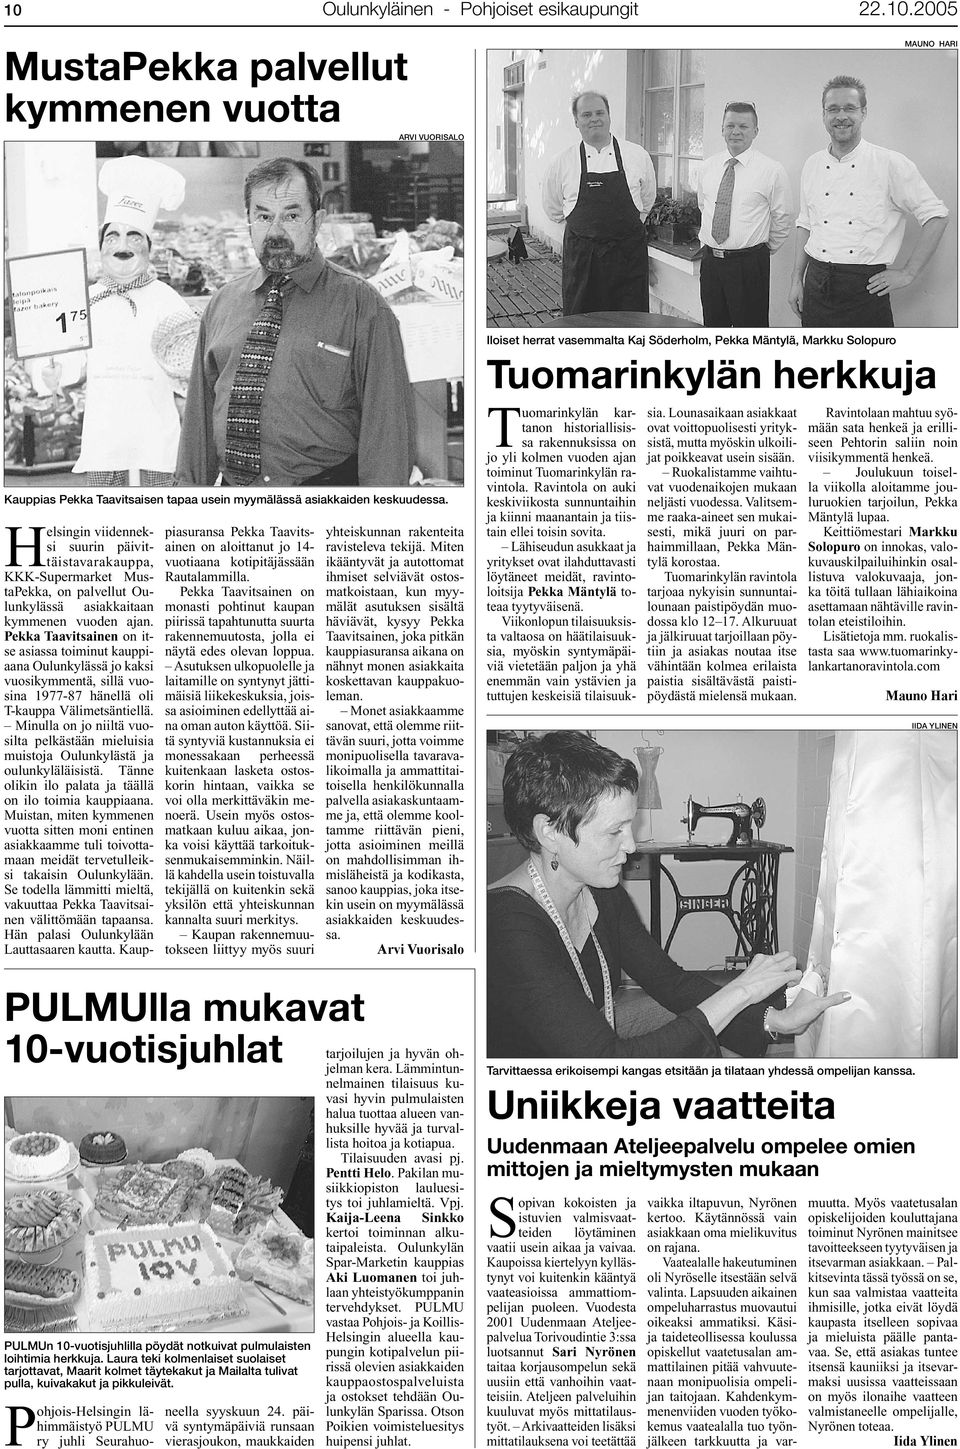 Pekka Taavitsainen on itse asiassa toiminut kauppiaana Oulunkylässä jo kaksi vuosikymmentä, sillä vuosina 1977-87 hänellä oli T-kauppa Välimetsäntiellä.